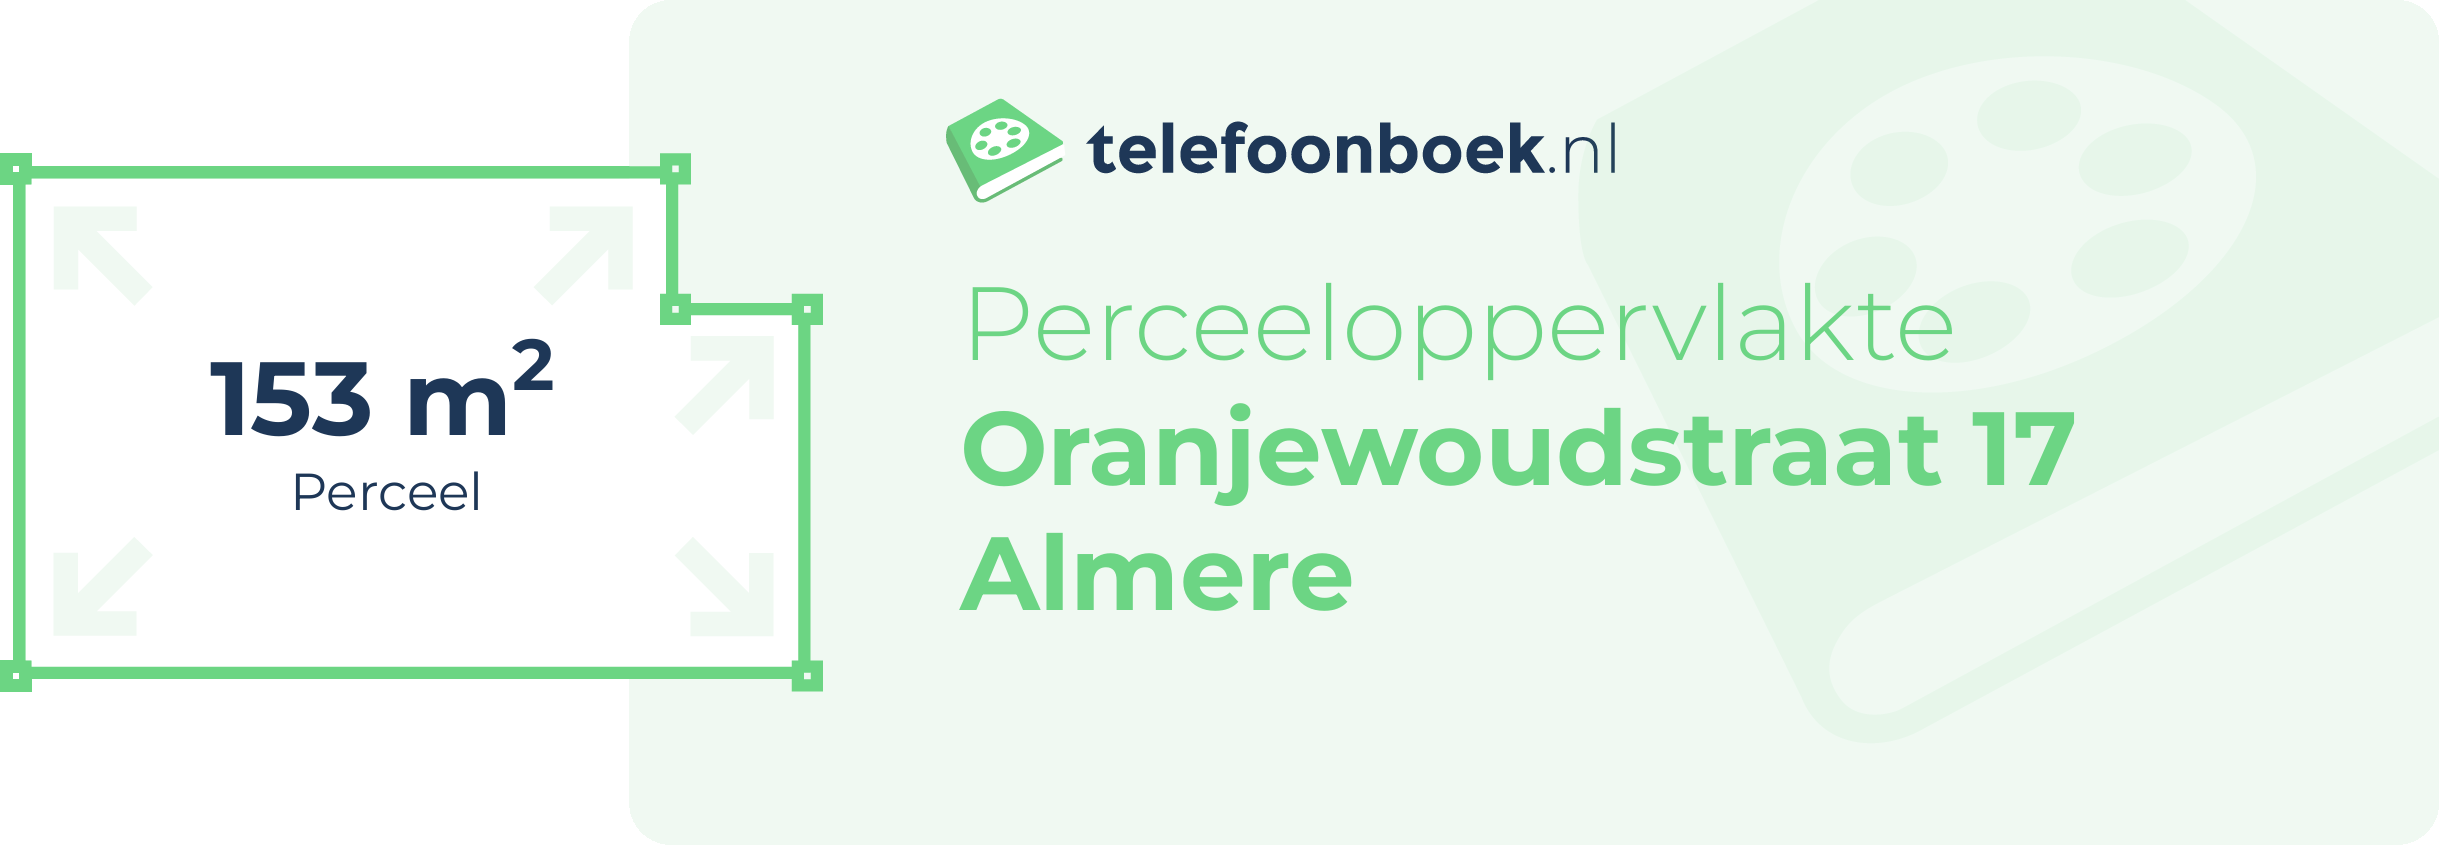 Perceeloppervlakte Oranjewoudstraat 17 Almere